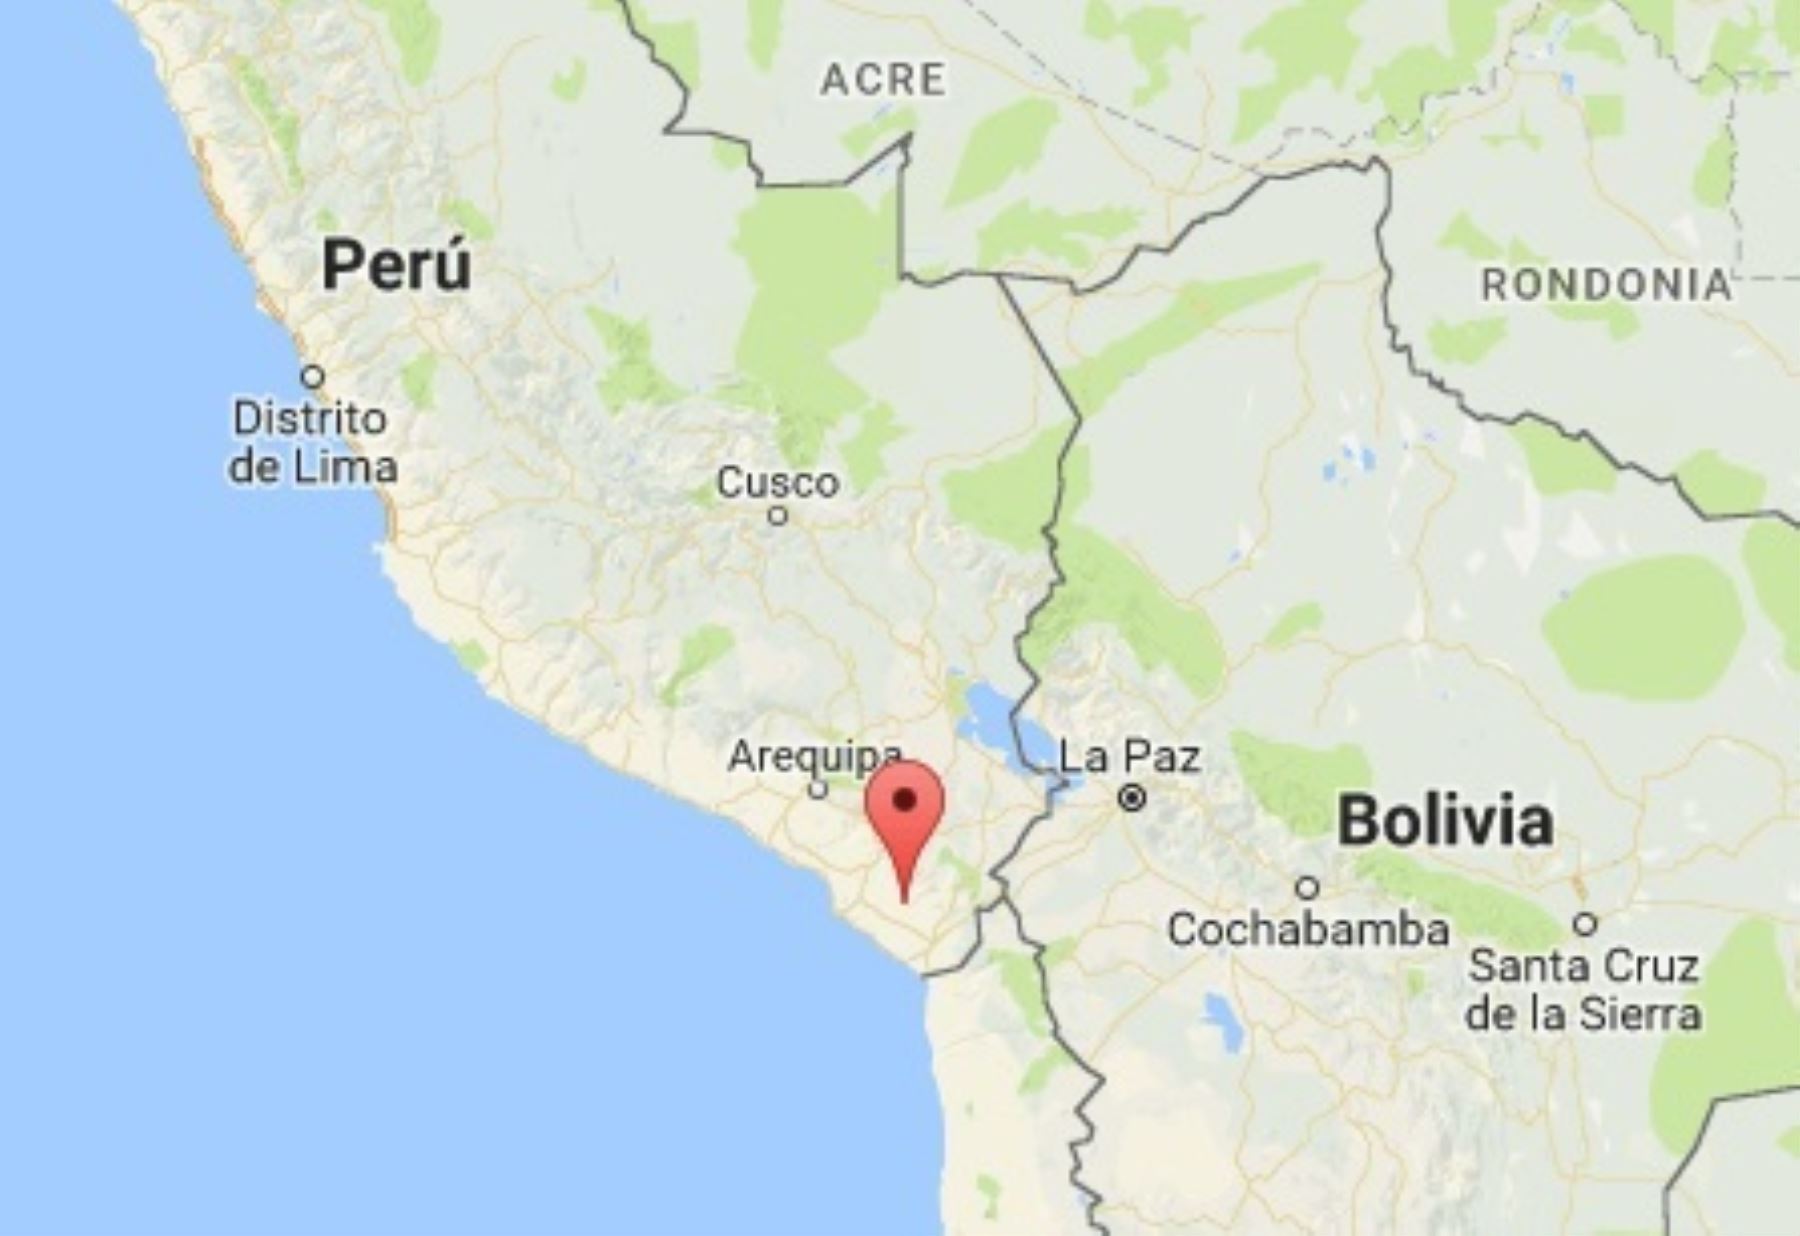 Un sismo de magnitud 3.8 se registró esta mañana en Tacna. El epicentro del temblor se ubicó cerca de Locumba. Foto: ANDINA/difusión.